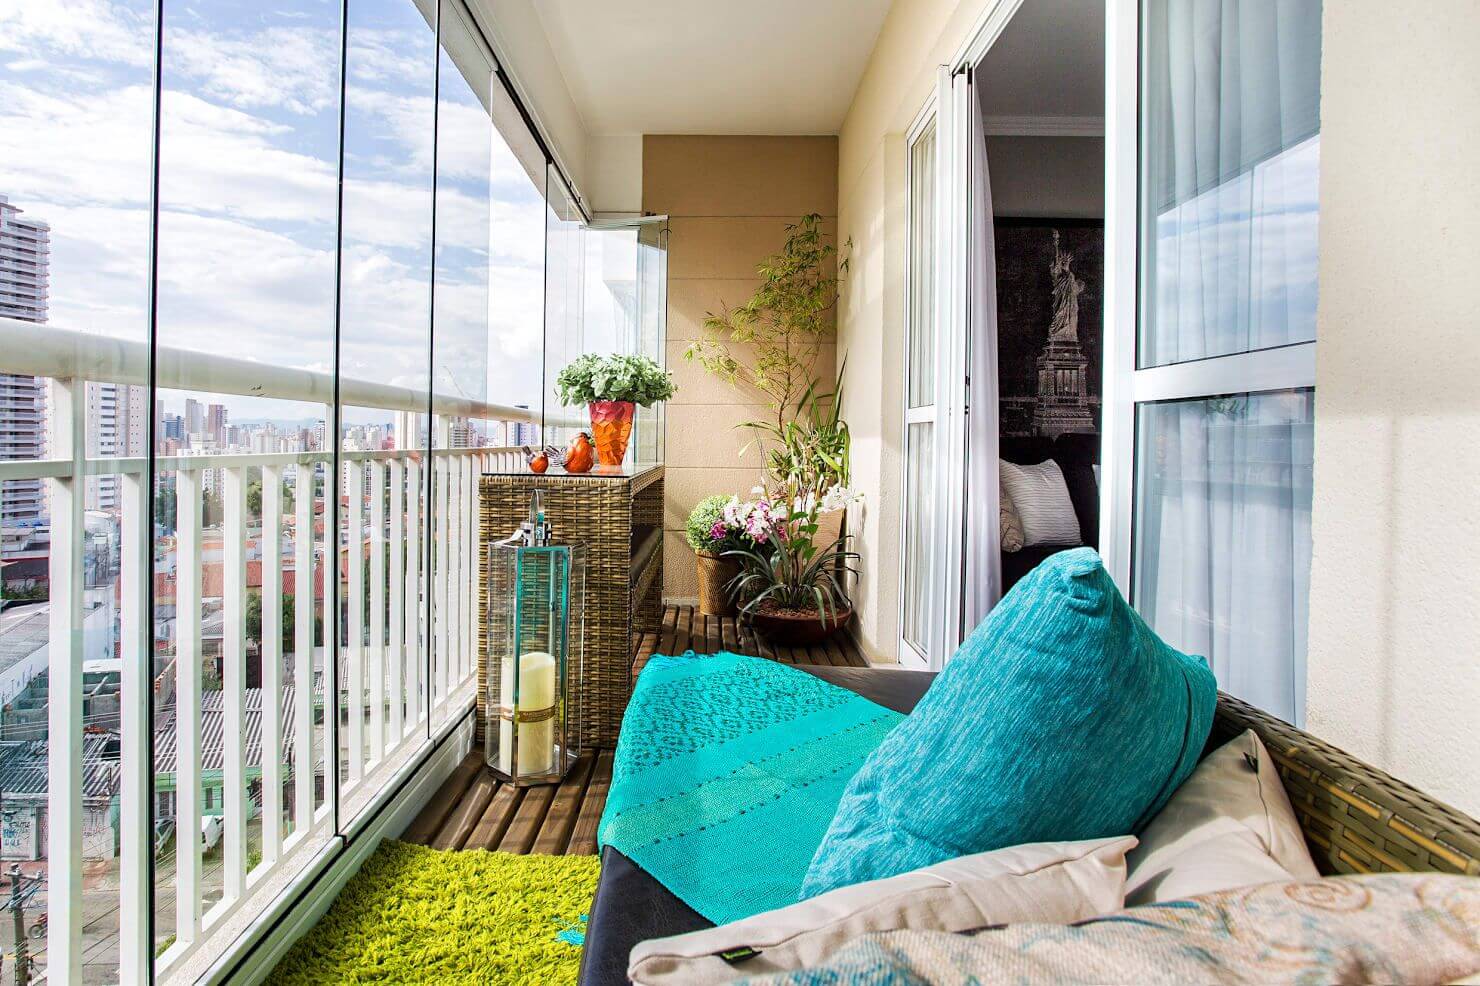 Панорамный балкон дизайн интерьера фото стильные